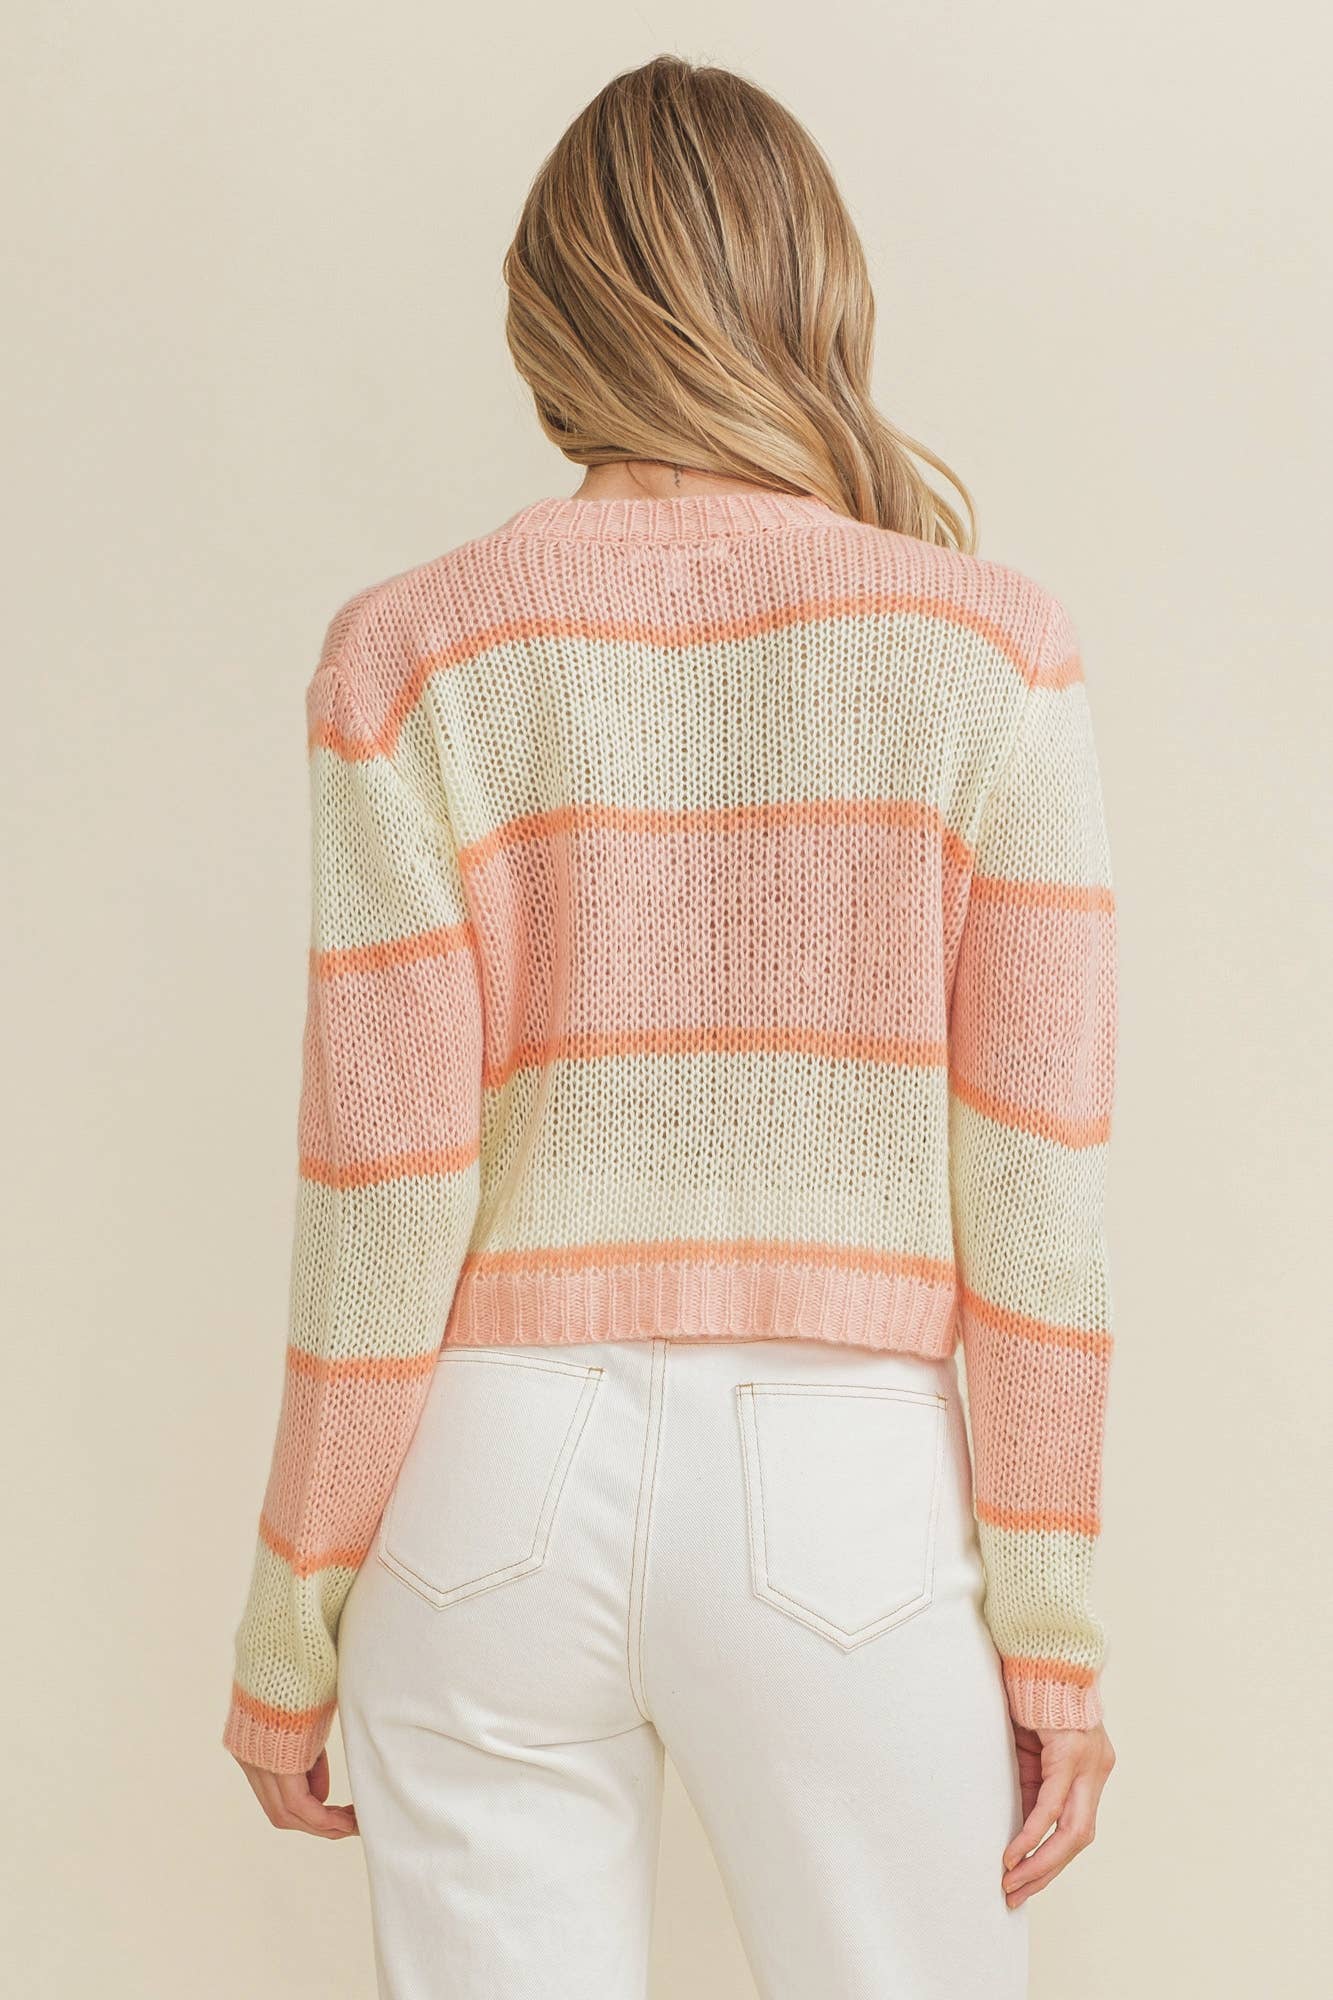 Cloud Ten - CSW10064Y - Bright Striped Open Knit Women's Sweater: S / Orange/Yellow